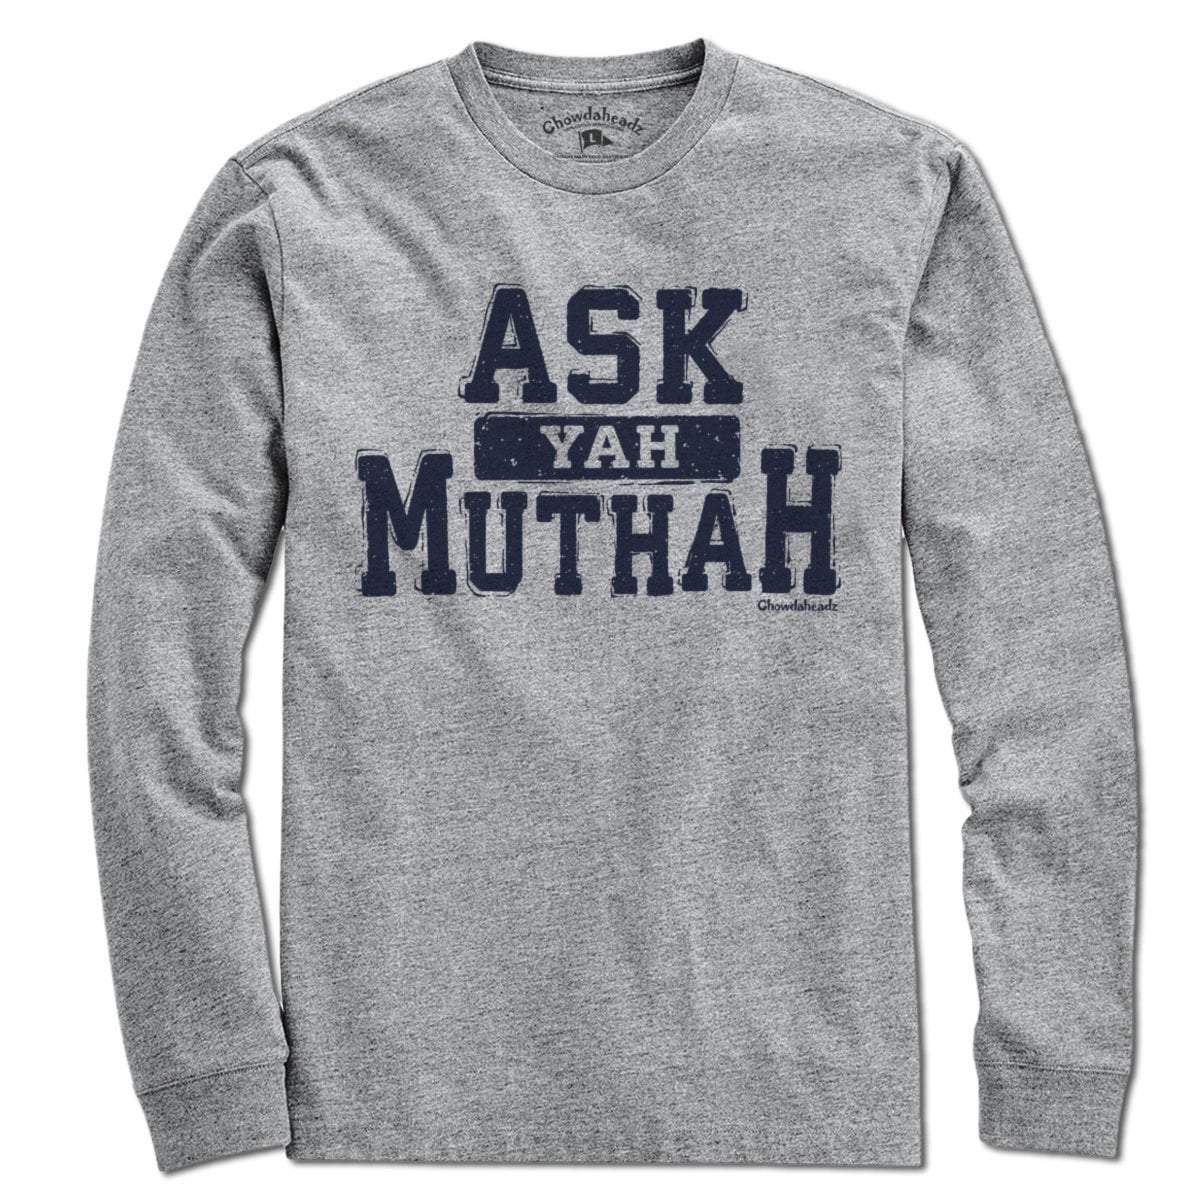 Ask Yah Muthah T-Shirt - Chowdaheadz